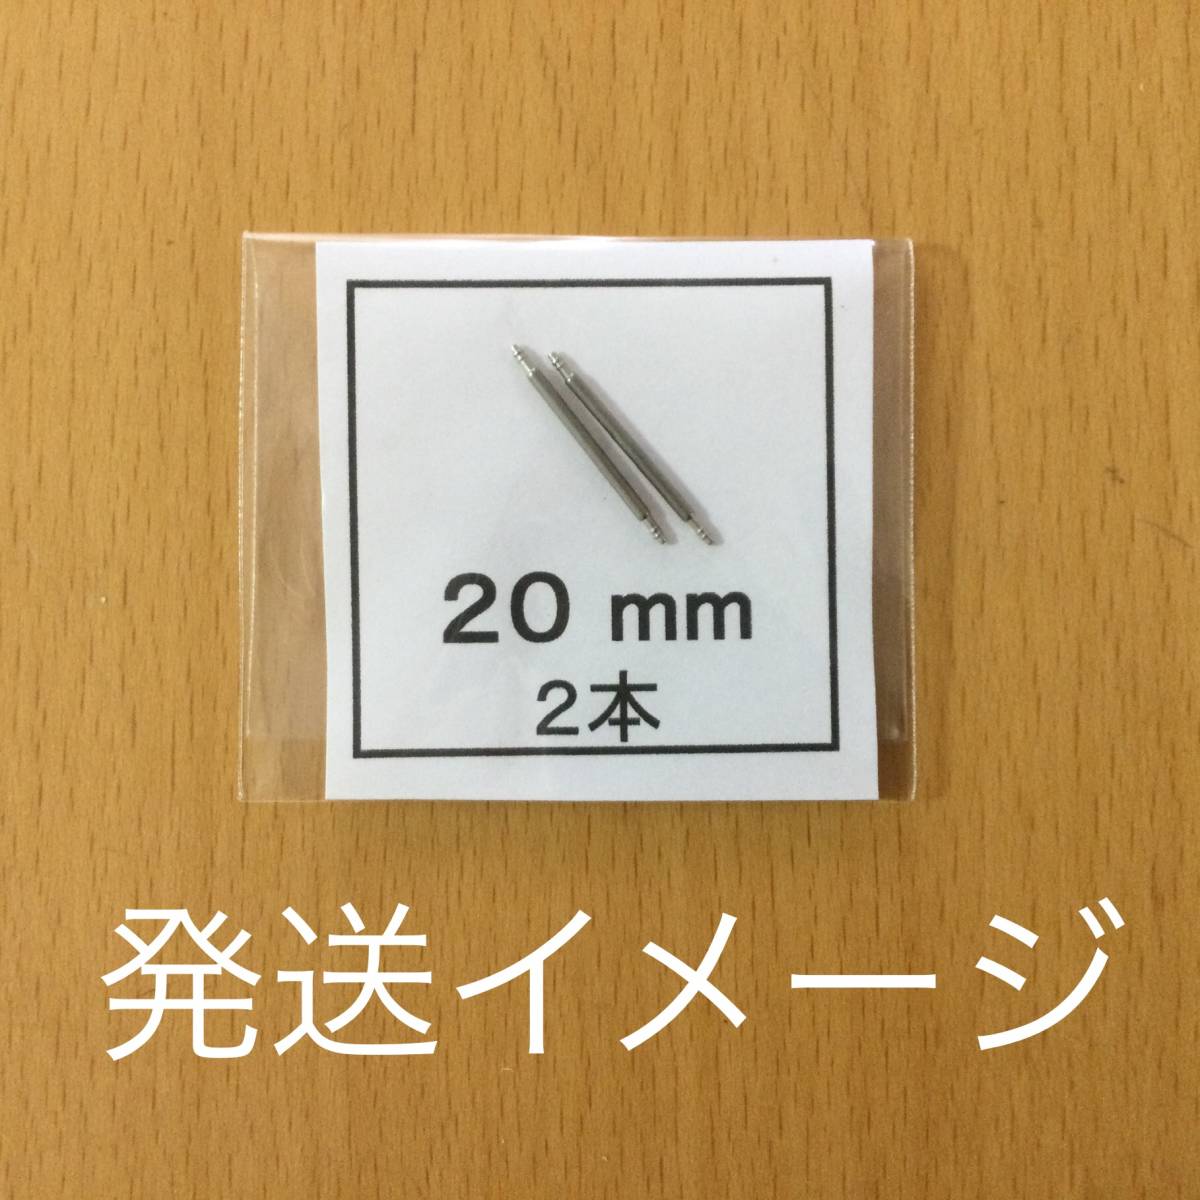  наручные часы spring палка spring палка 2 шт 10mm для 130 иен включая доставку быстрое решение немедленная отправка изображение 3 листов y